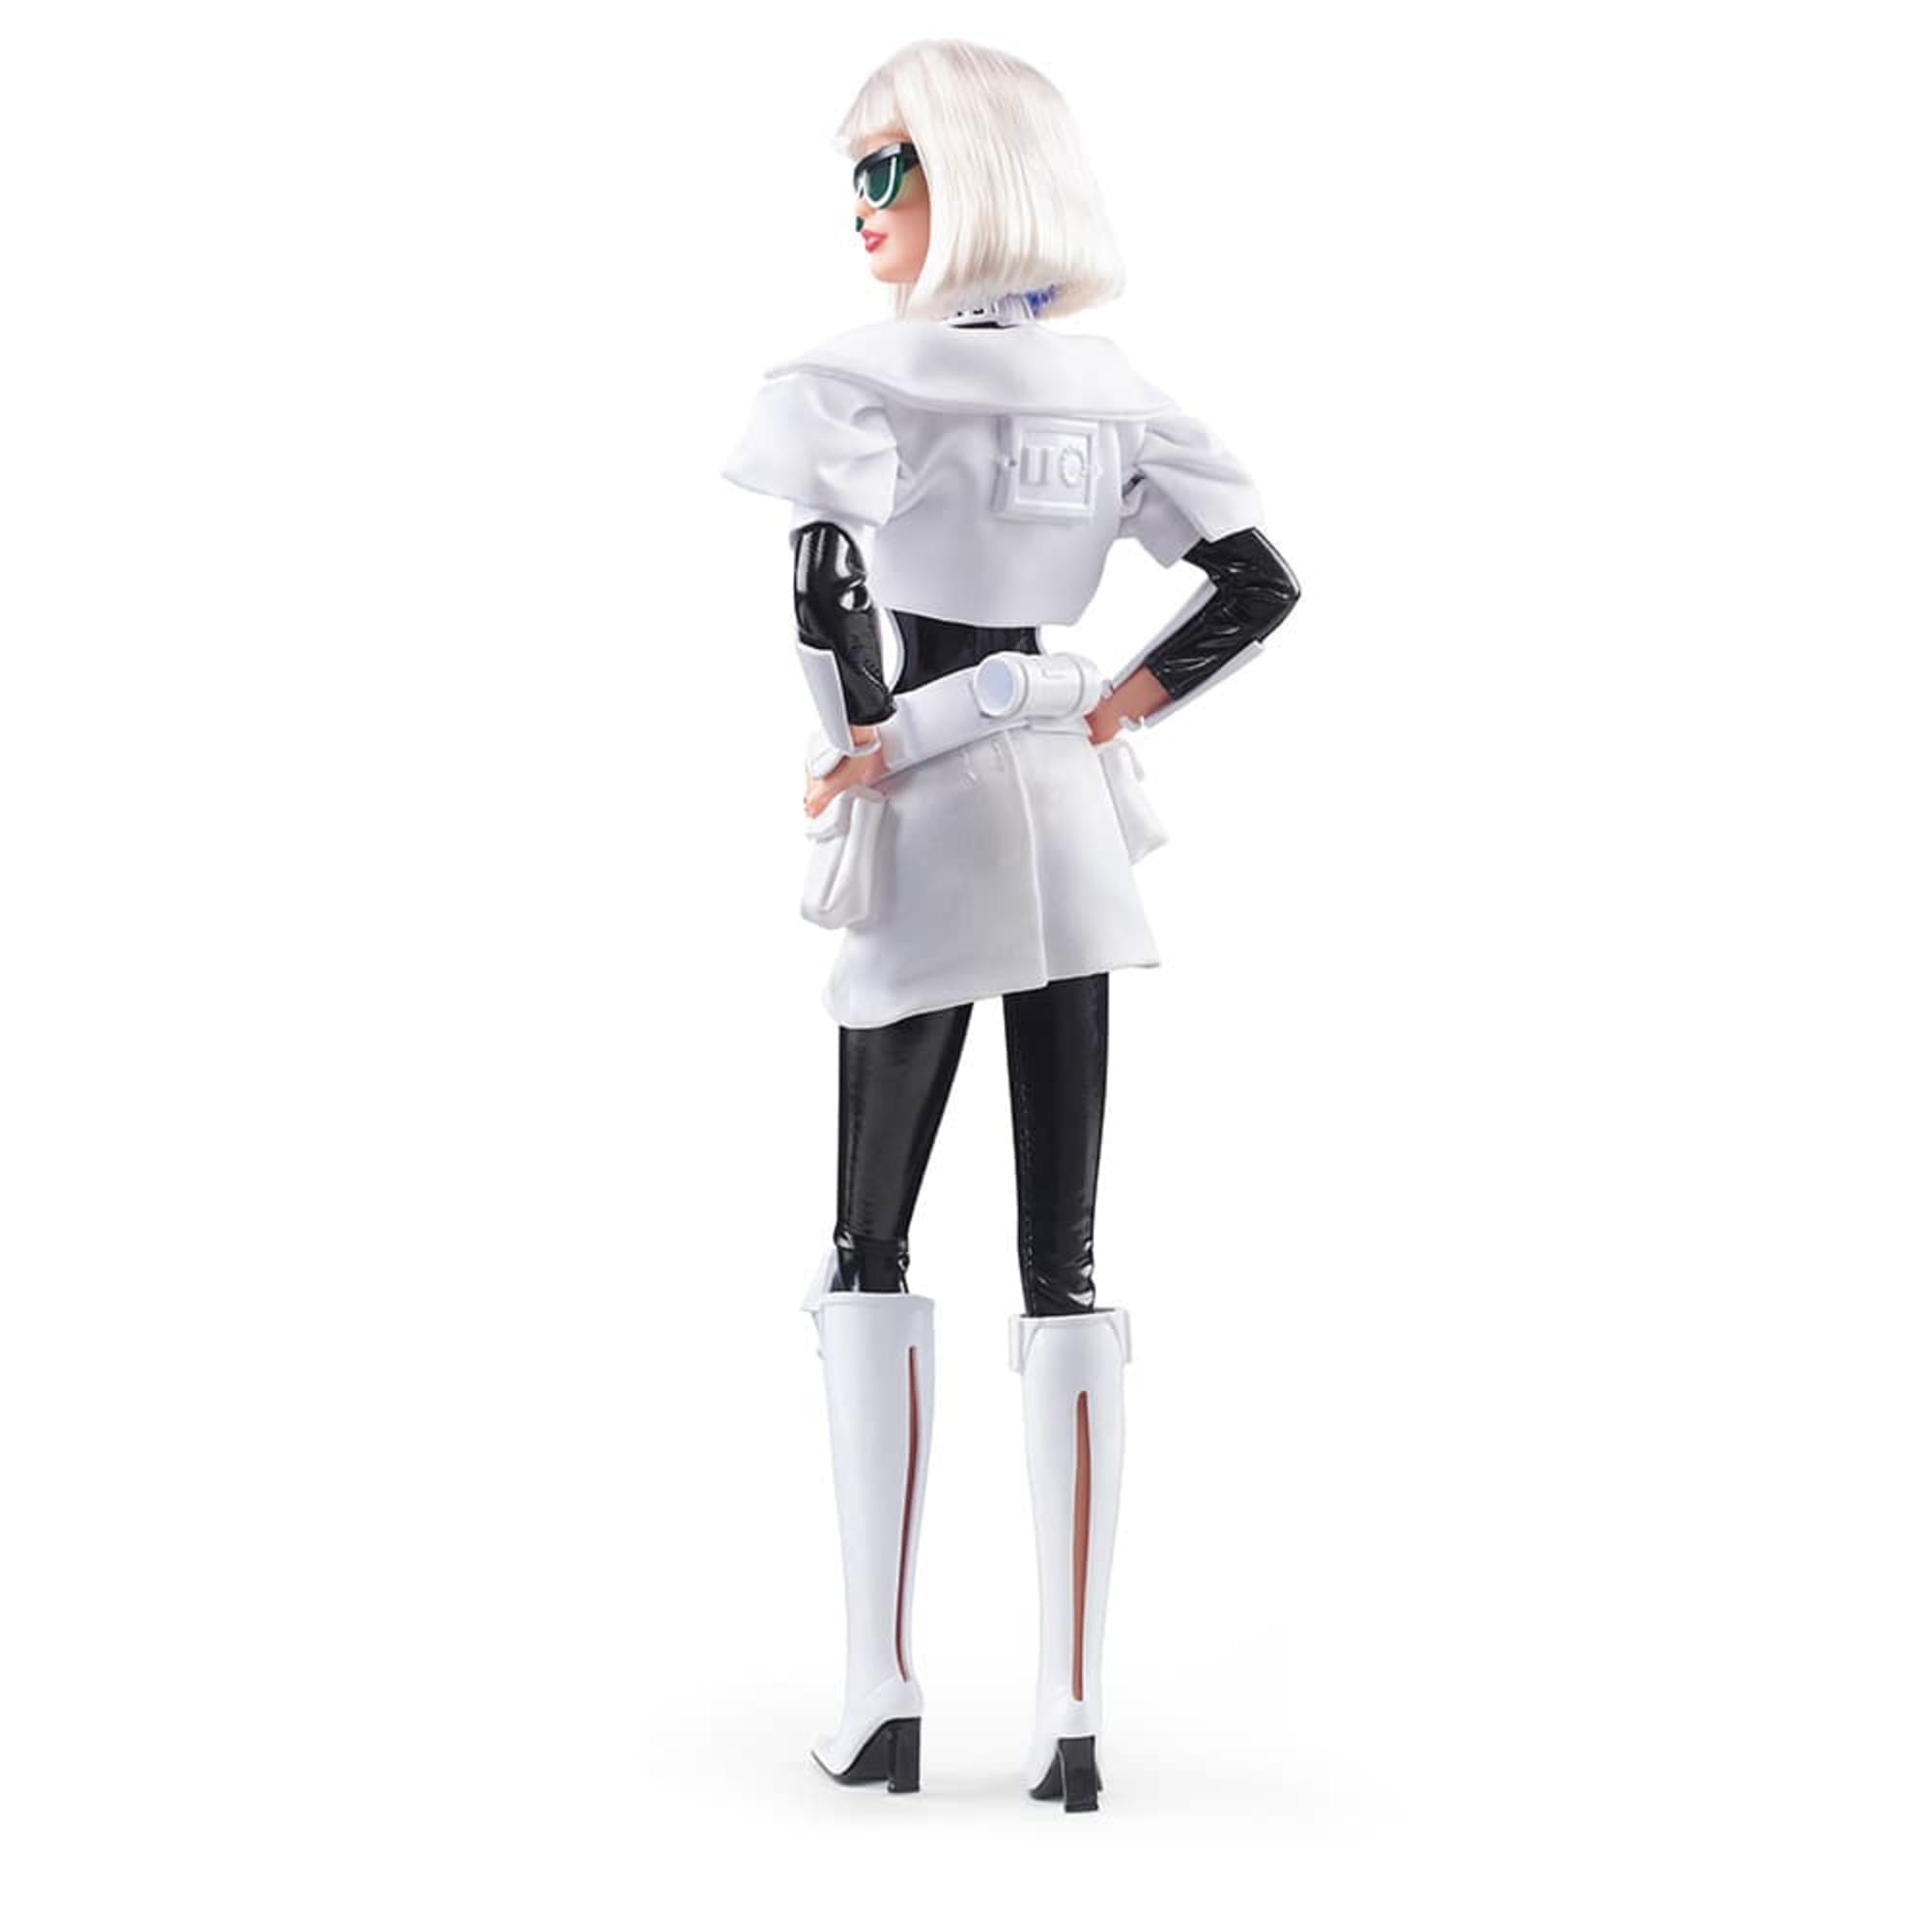 Star Wars Stormtrooper x Barbie Doll